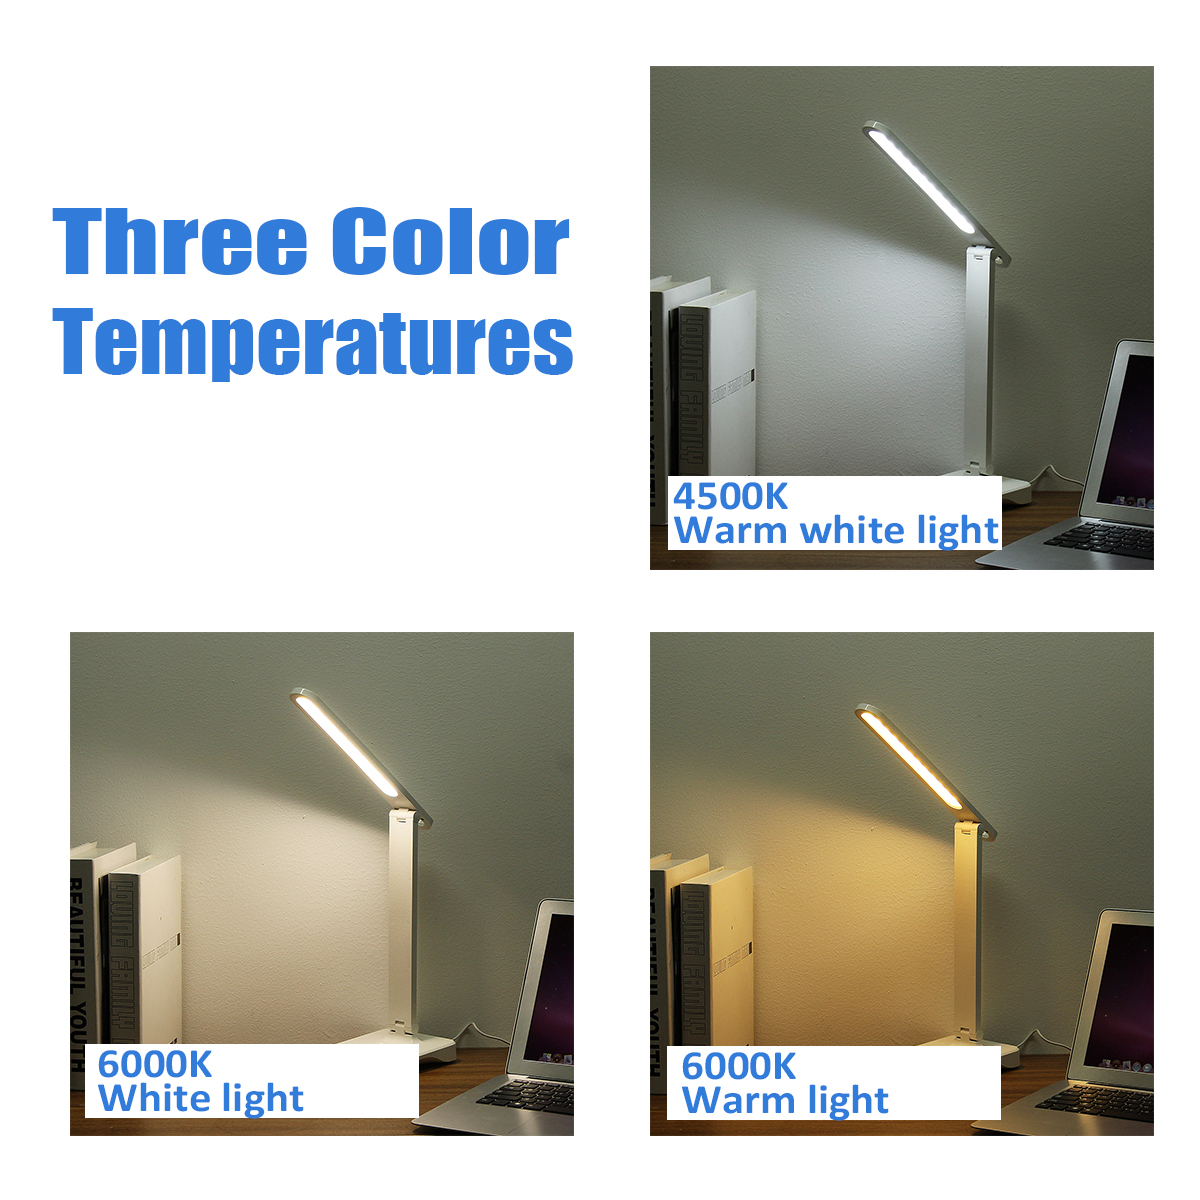 USB-Touch-Diming-LED-Desk-Lamp-3-Modes-Adjustable-Night-Table-Light-for-Reading-Bedside-Bedroom-DC5V-1692932-10